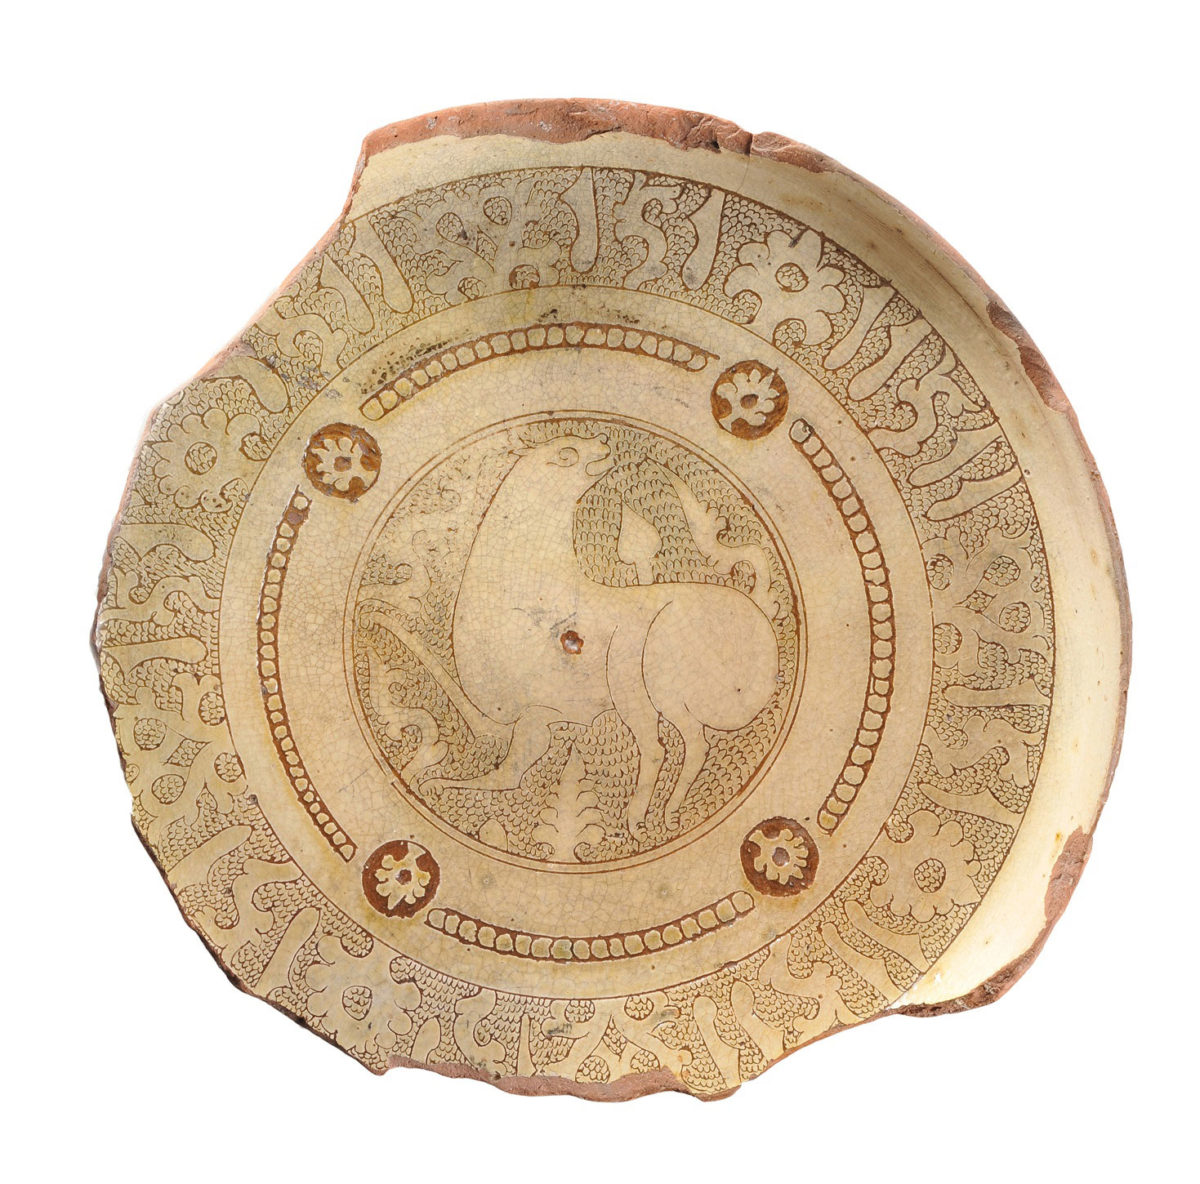 Εφυαλωμένη κεραμική, μεσοβυζαντινή περίοδος (10ος-12ος αι.). Διαχρονικό Μουσείο Λάρισας.